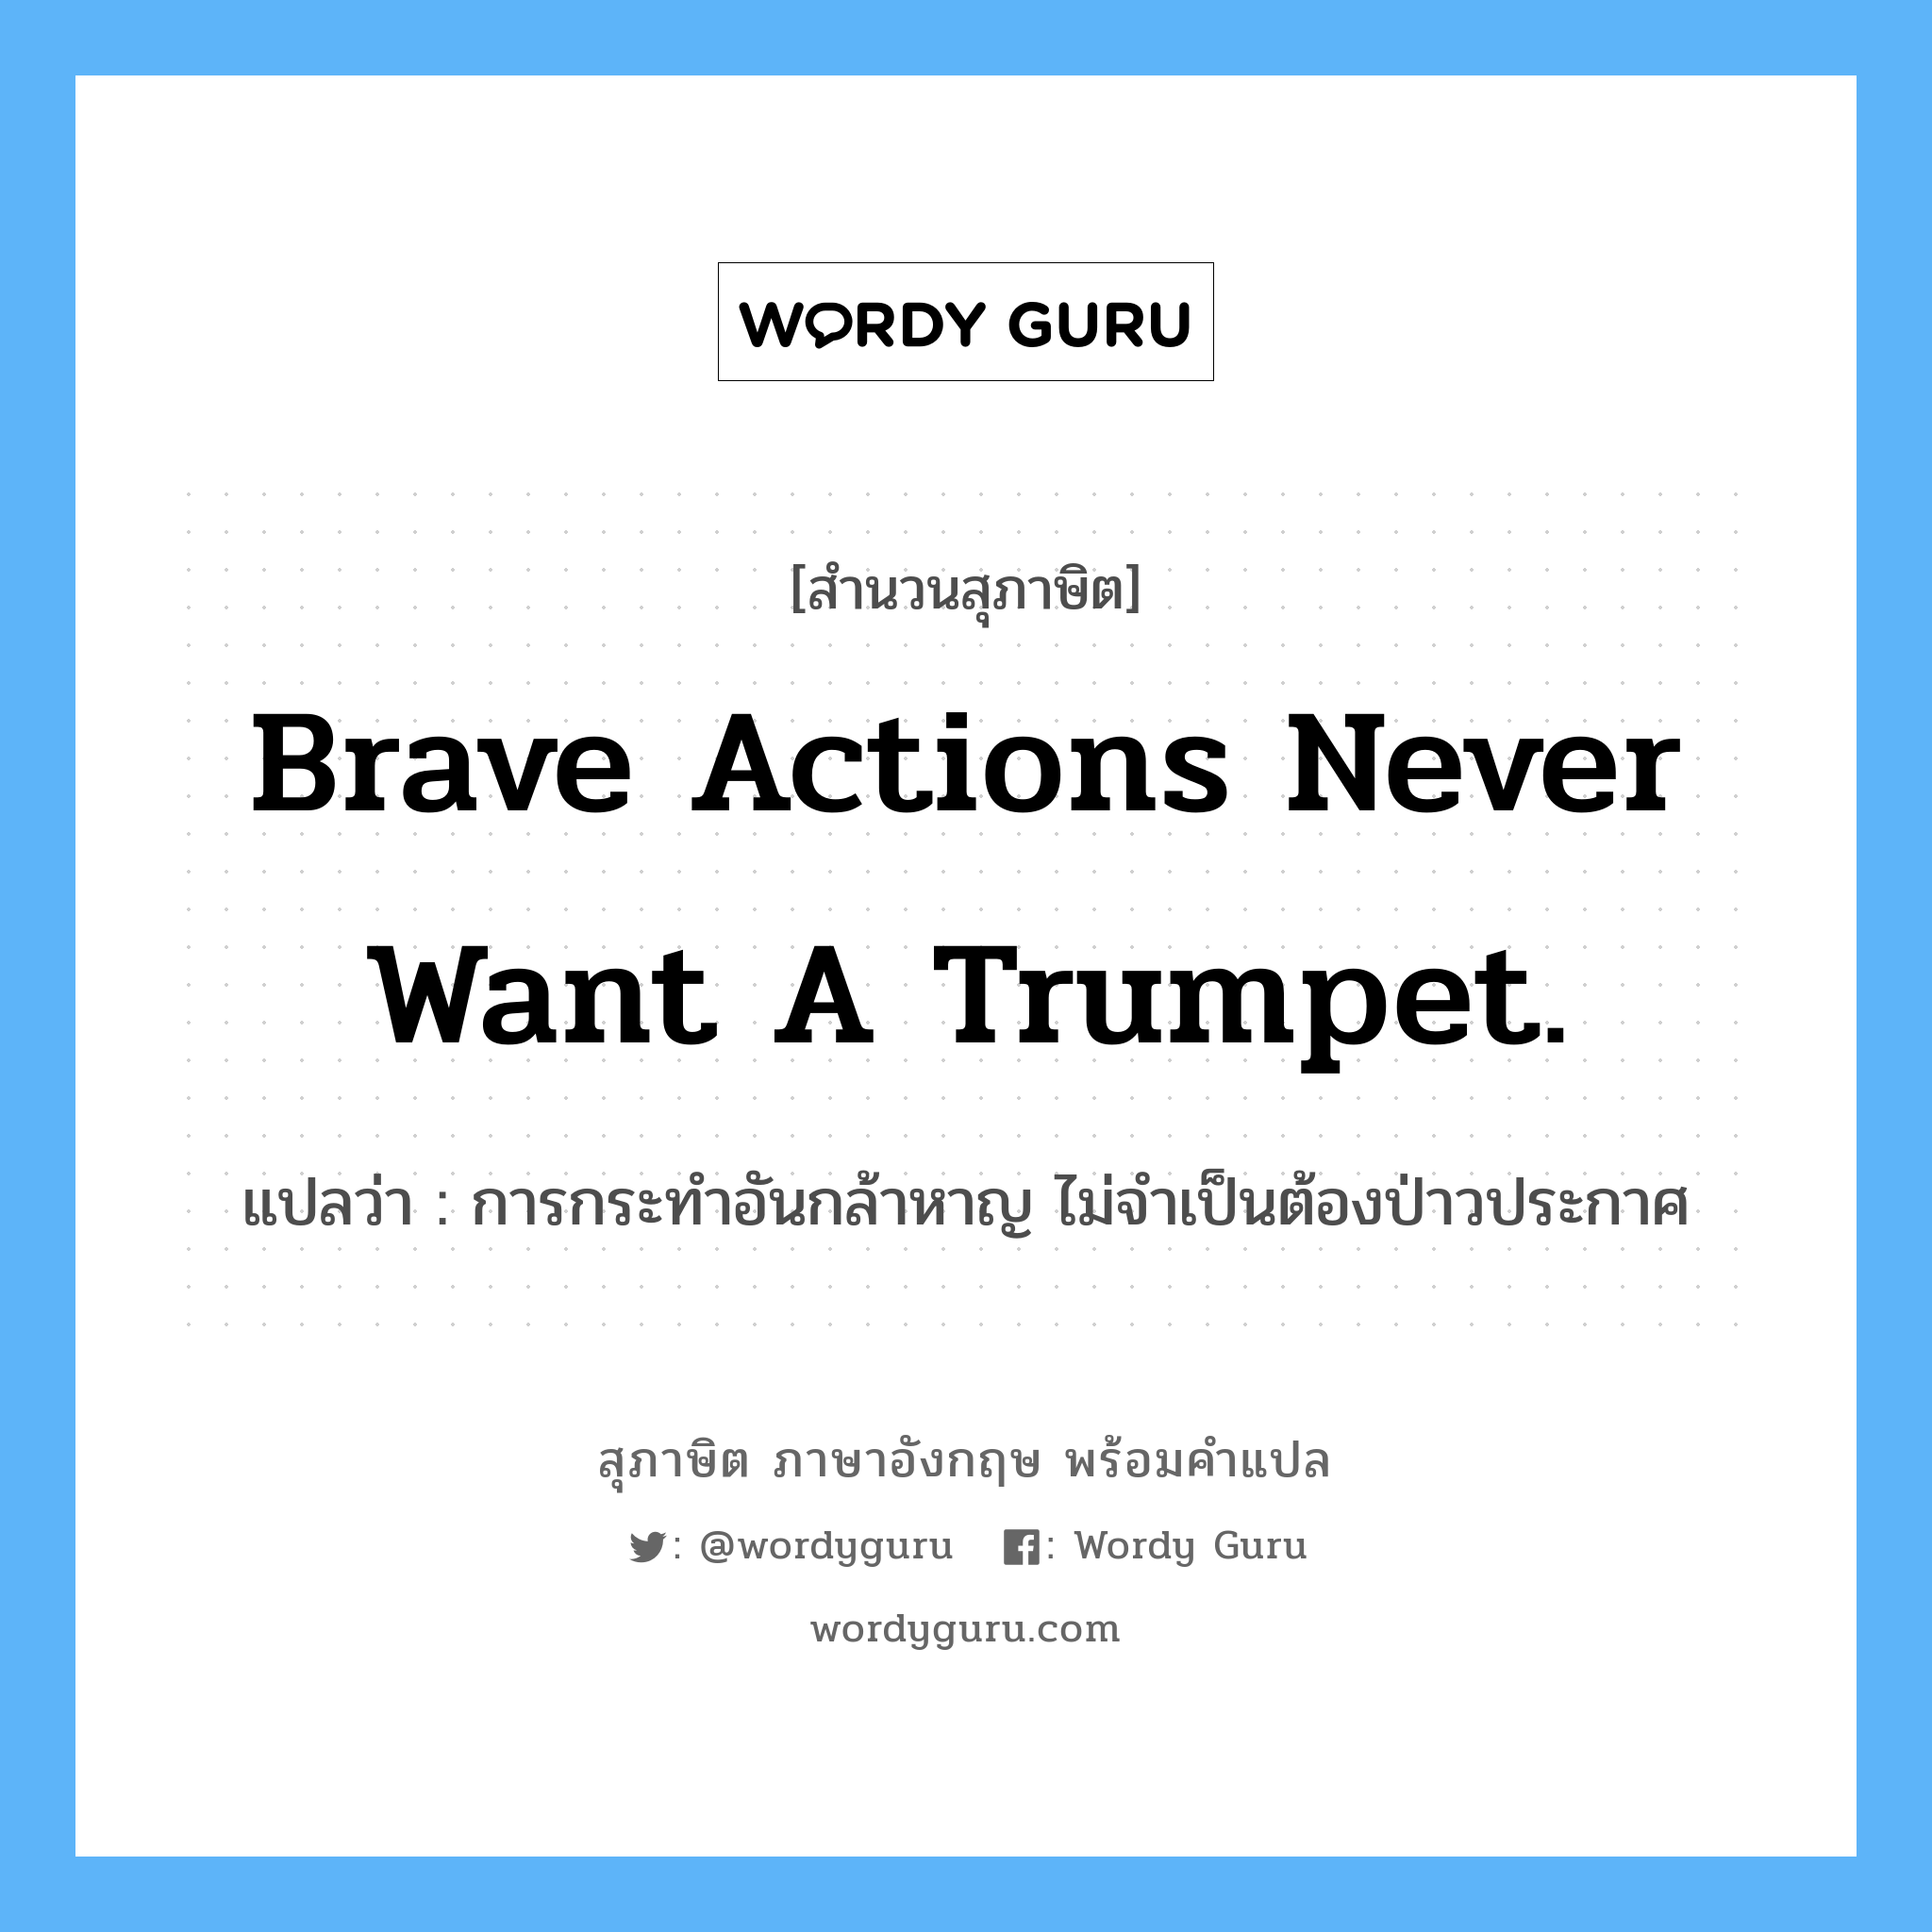 Brave actions never want a trumpet. แปลว่า?, สำนวนสุภาษิต ภาษาอังกฤษ Brave actions never want a trumpet. แปลว่า การกระทำอันกล้าหาญ ไม่จำเป็นต้องป่าวประกาศ